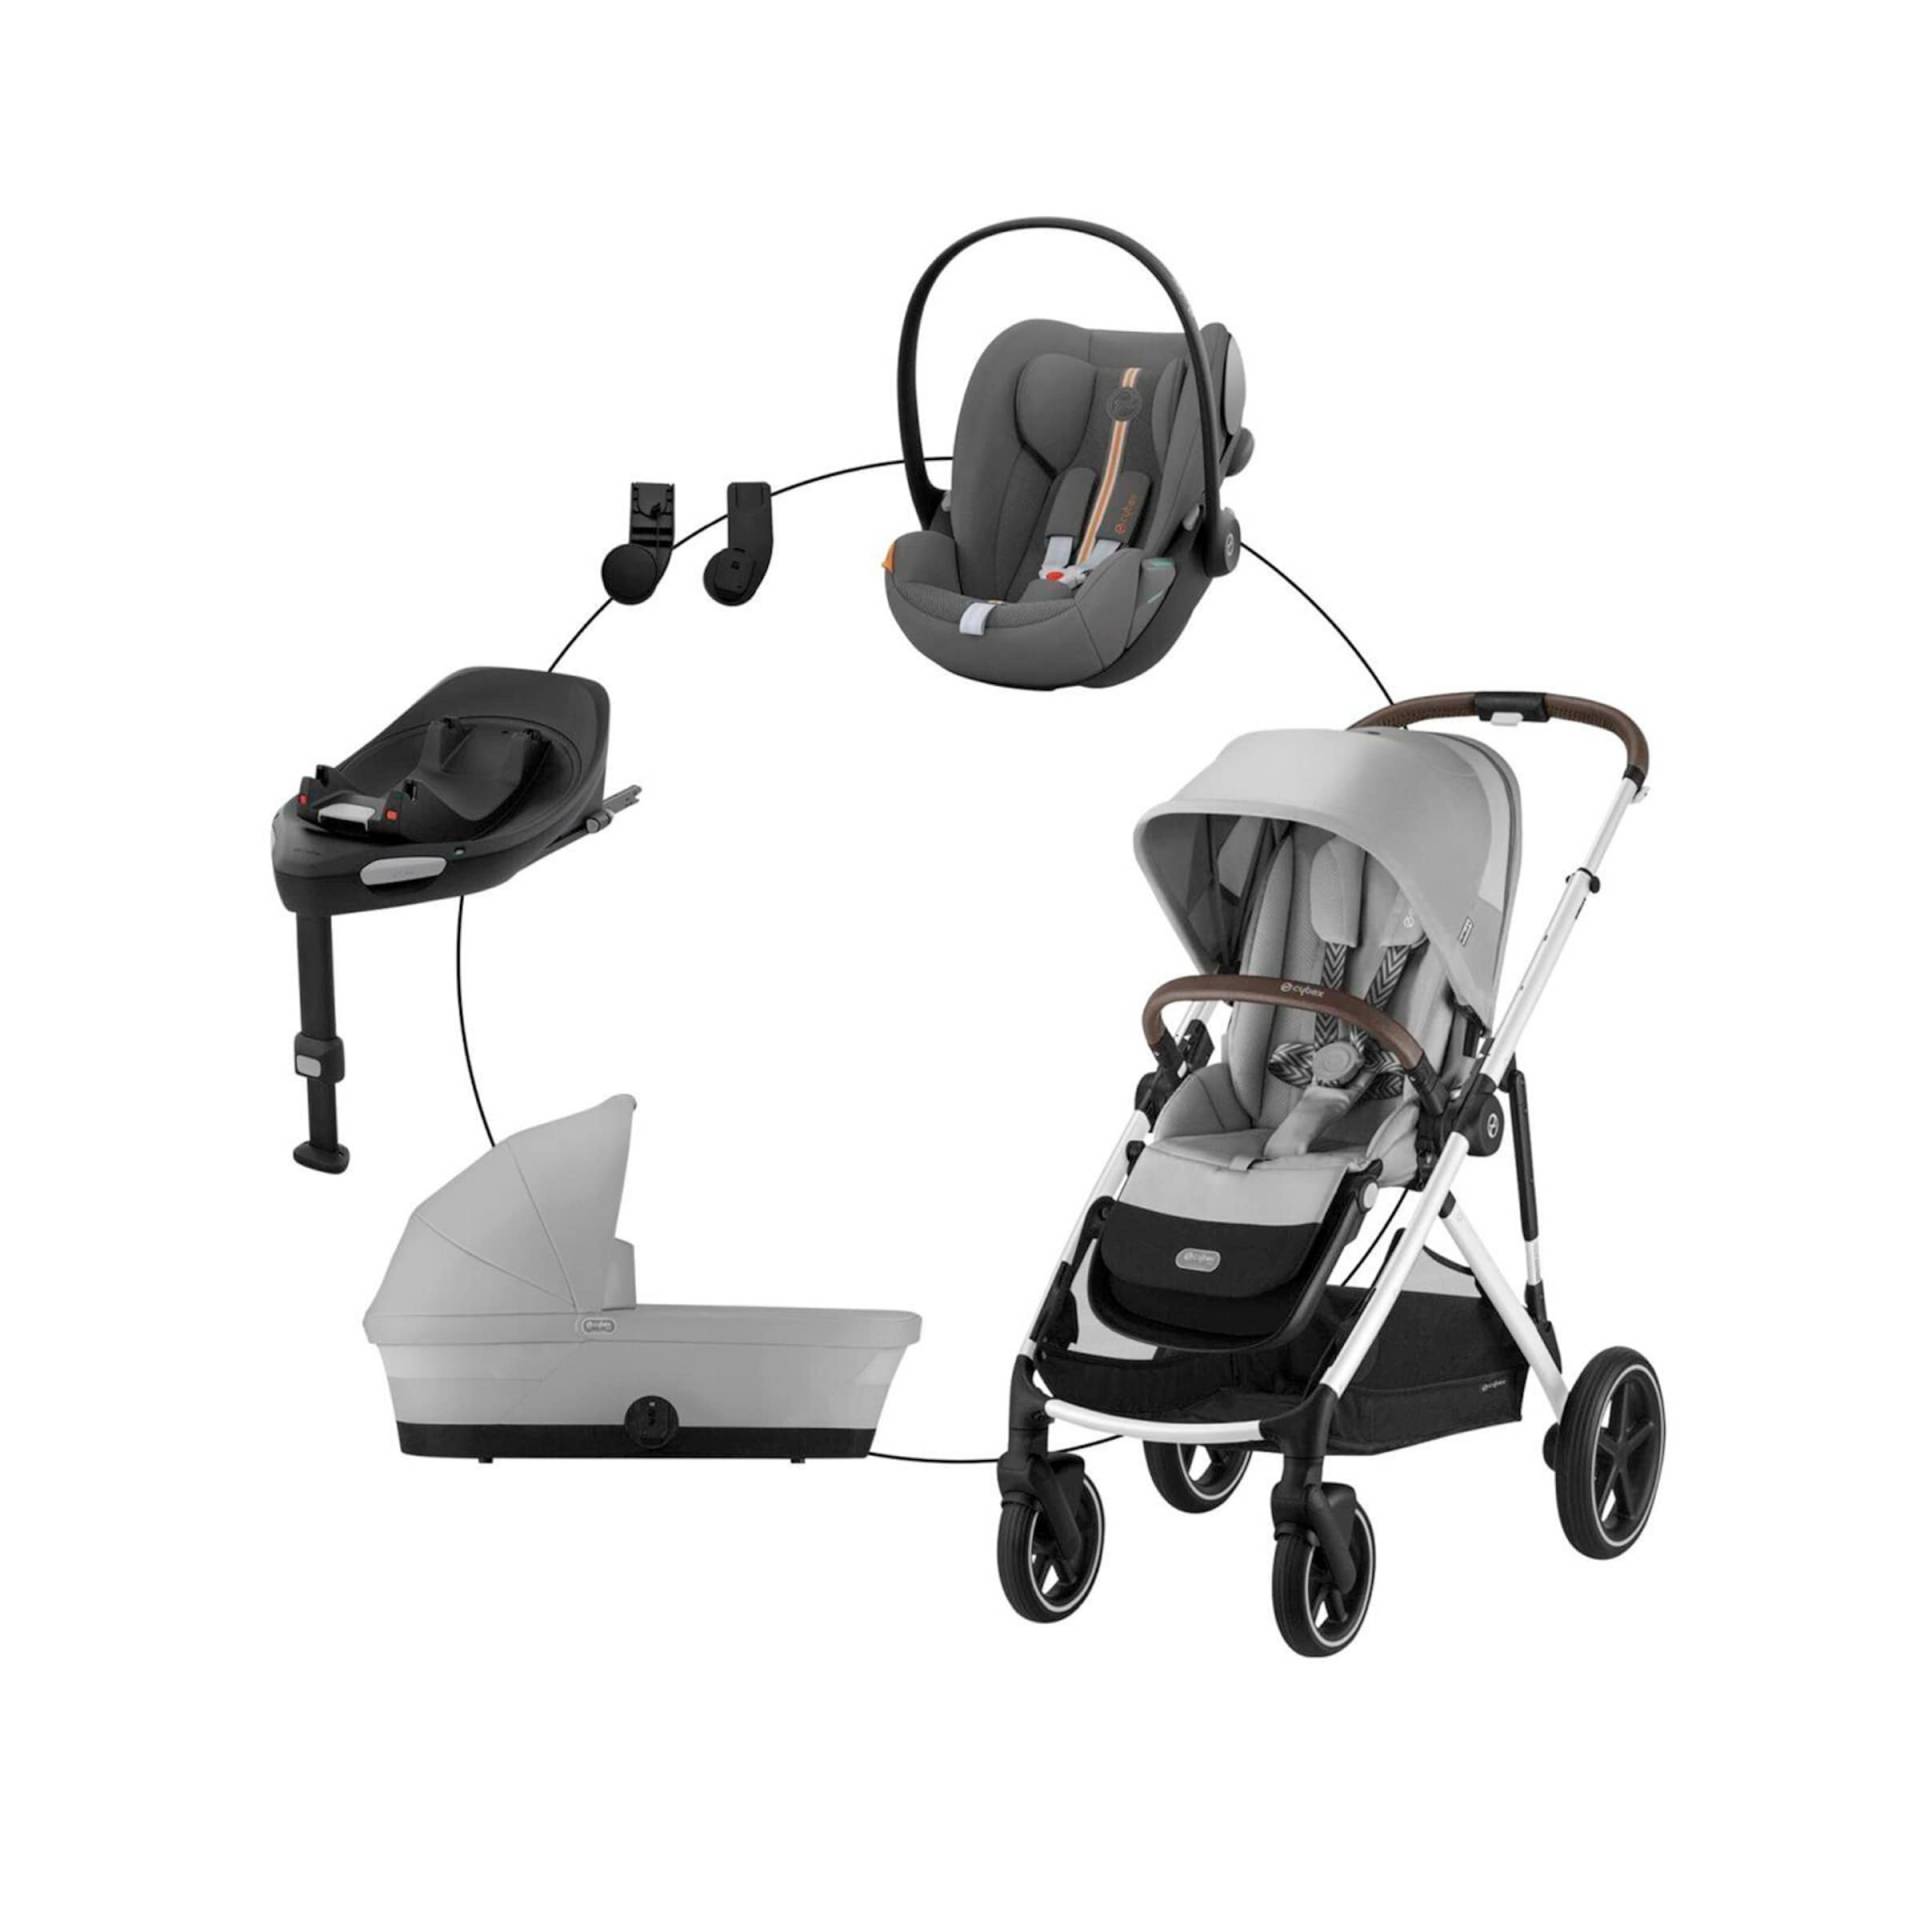 Kombikinderwagen Gazelle S Travel-Set inkl. Babyschale Cloud G i-Size und Isofix-Basis Base G von Cybex